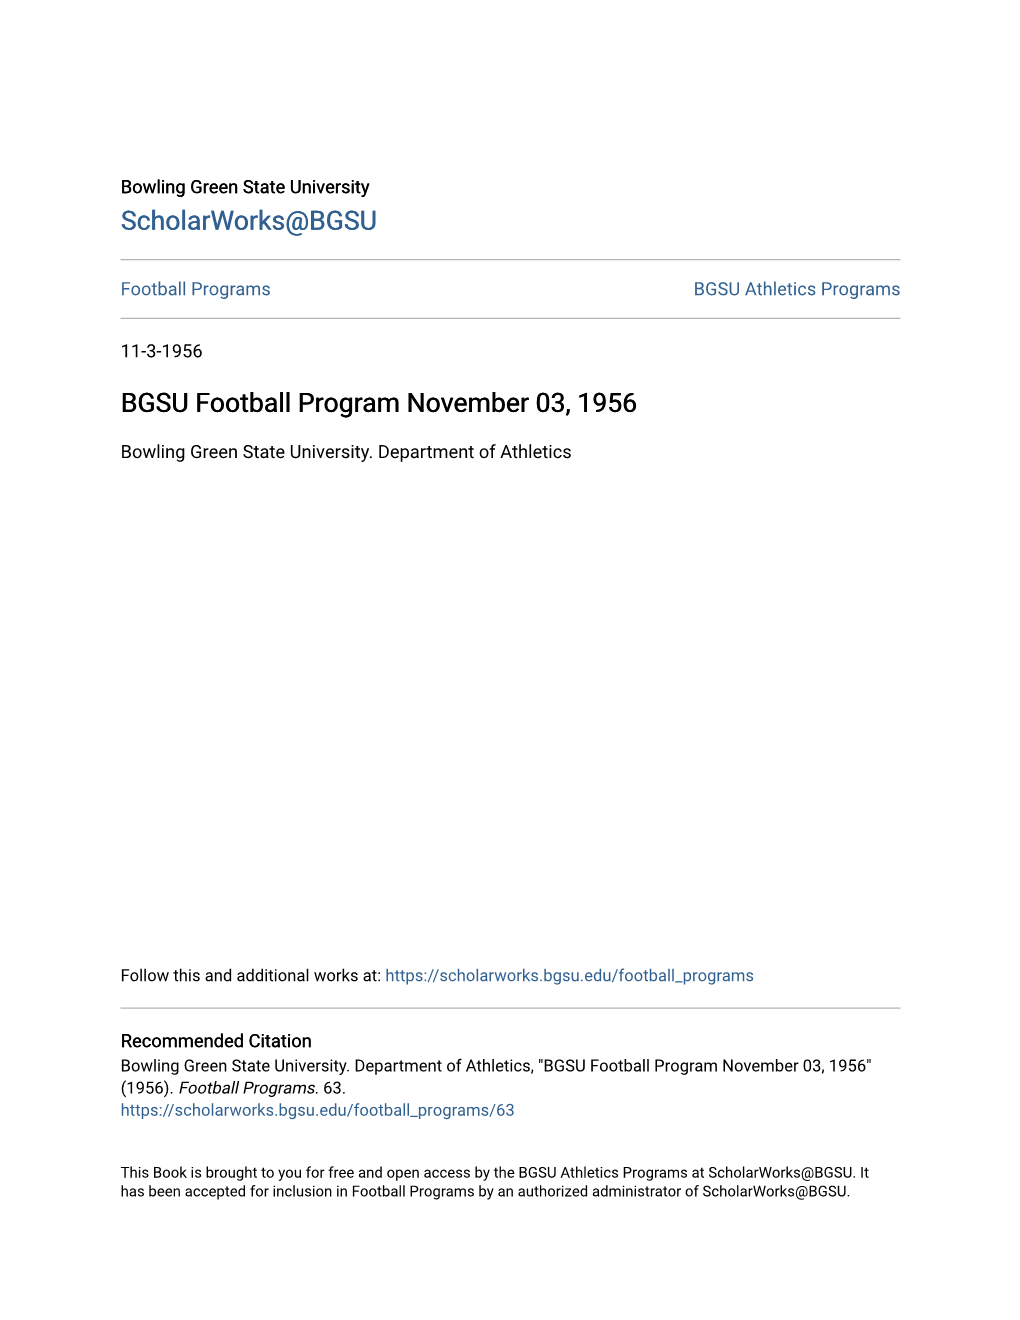 BGSU Football Program November 03, 1956